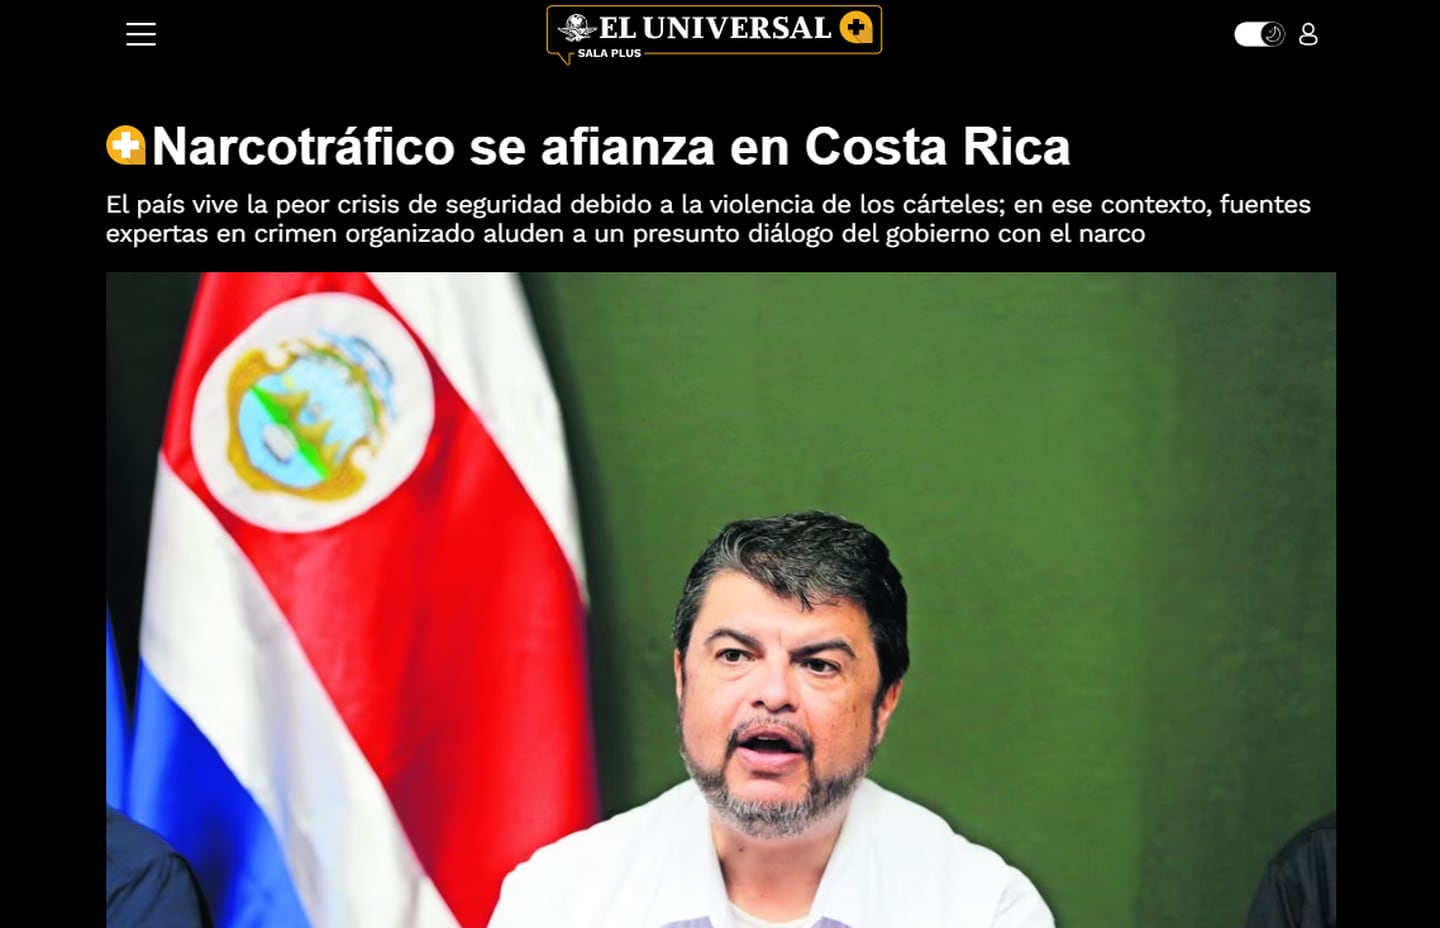 Captura de pantalla | 'El Universal' de México | Narcotráfico se afianza en Costa Rica